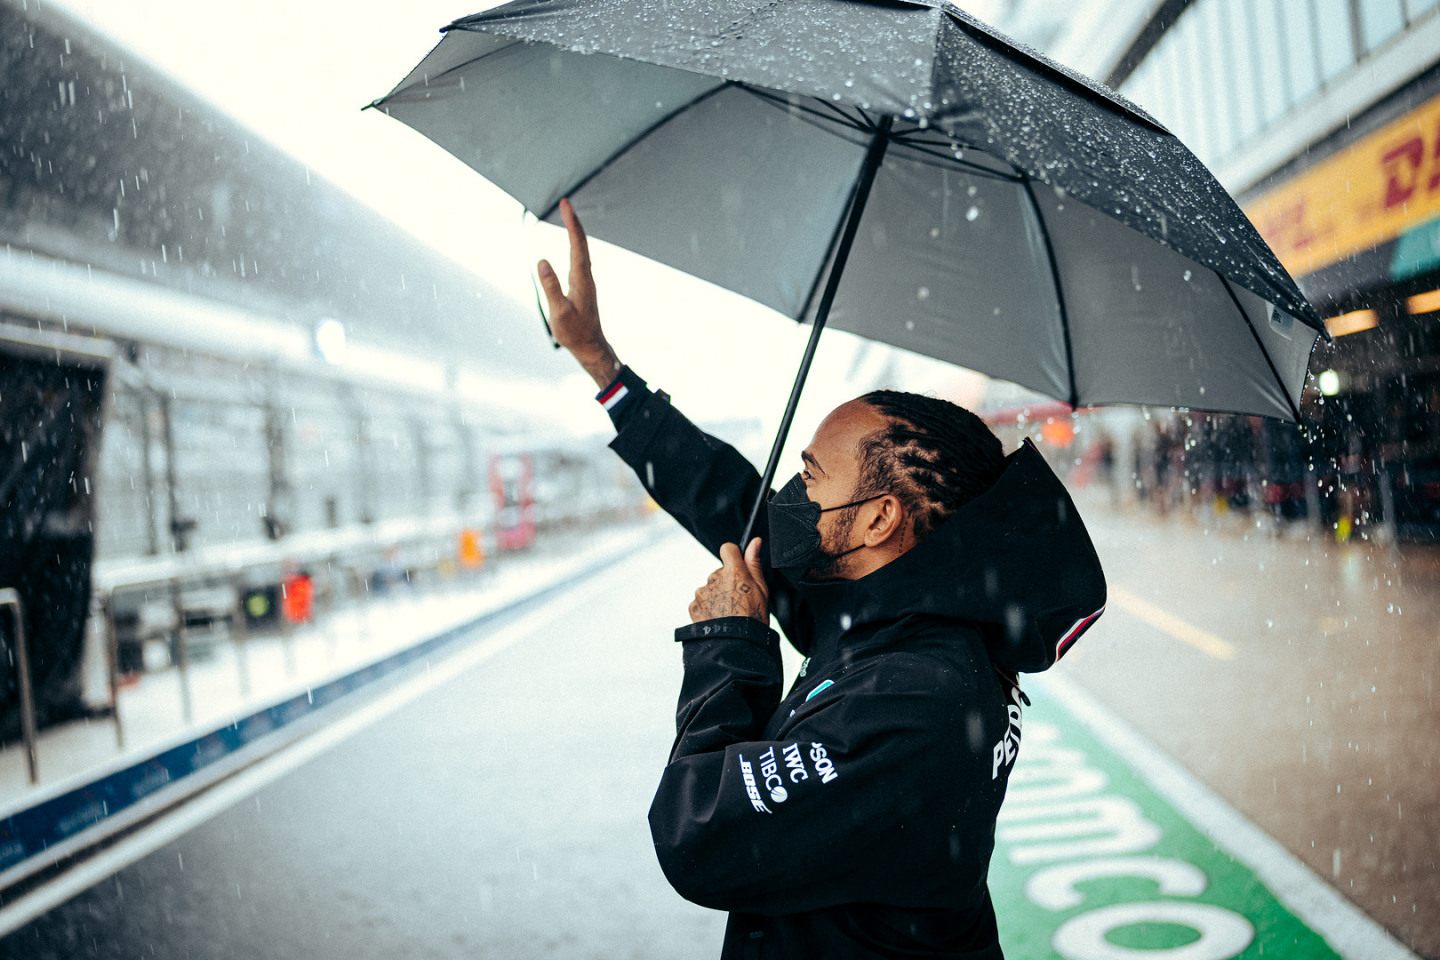 Льюис Хэмилтон приветствует болельщиков на Гран При России © Mercedes AMG F1 / Sebastian Kawka